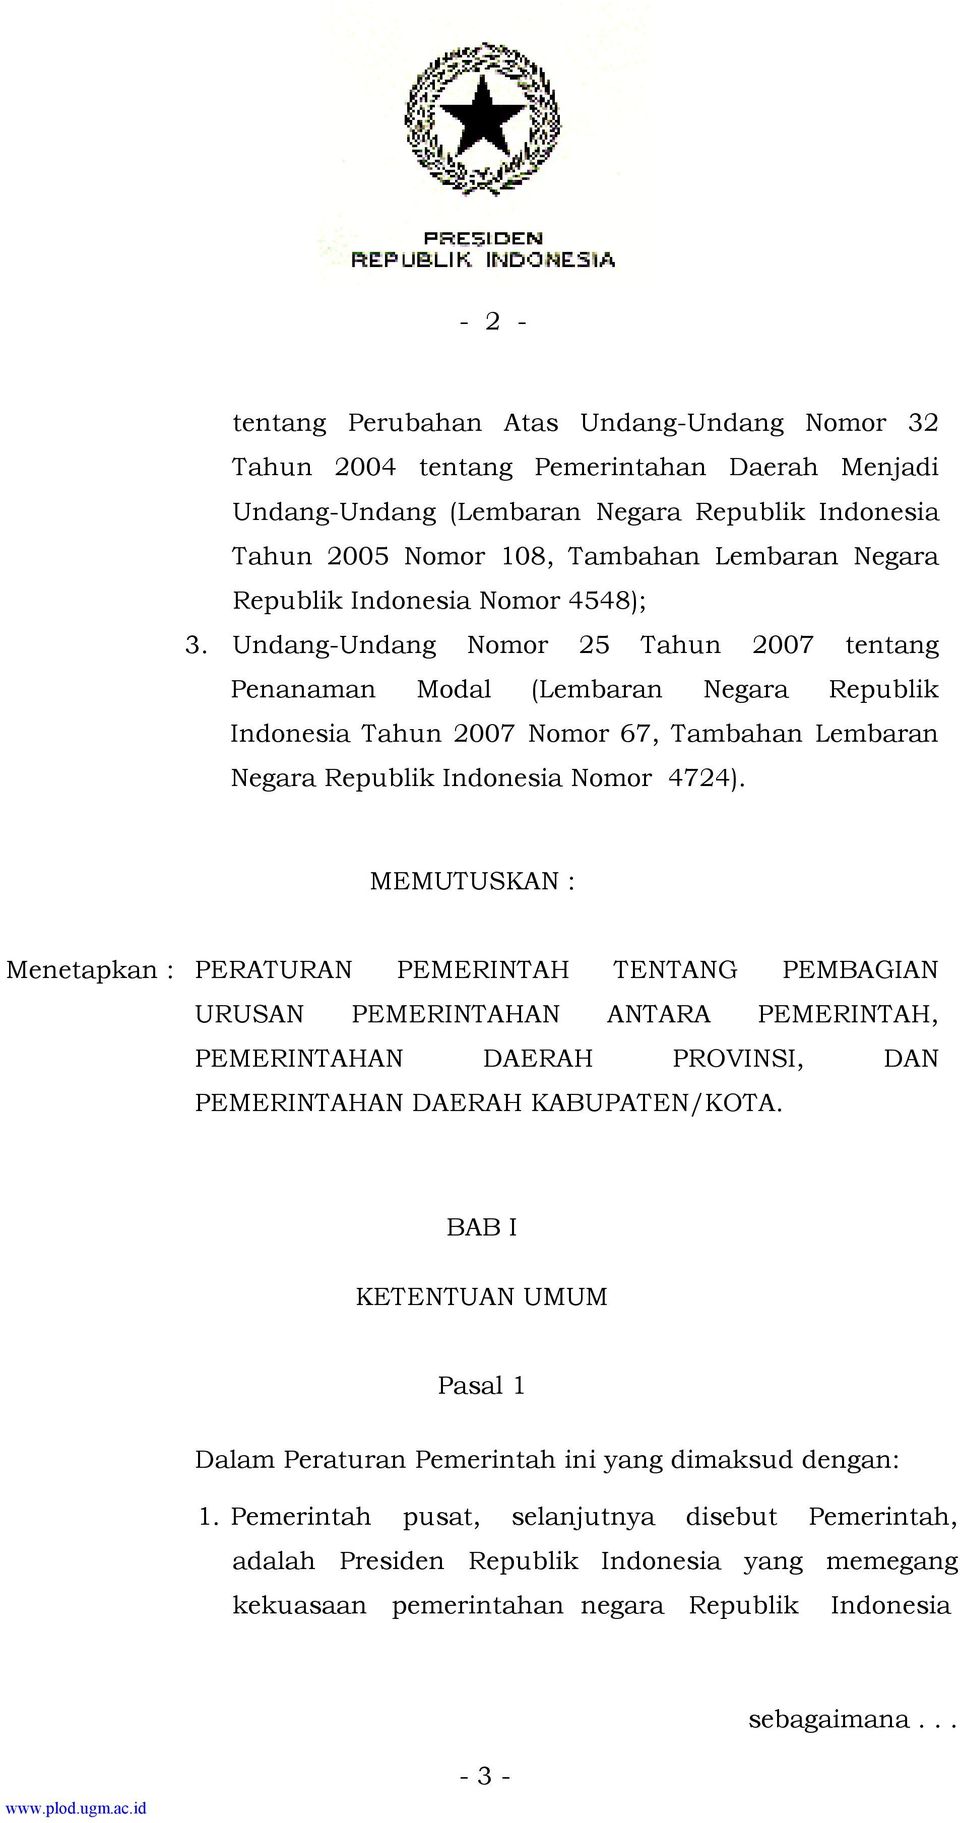 Undang-Undang Nomor 25 Tahun 2007 tentang Penanaman Modal (Lembaran Negara Republik Indonesia Tahun 2007 Nomor 67, Tambahan Lembaran Negara Republik Indonesia Nomor 4724).